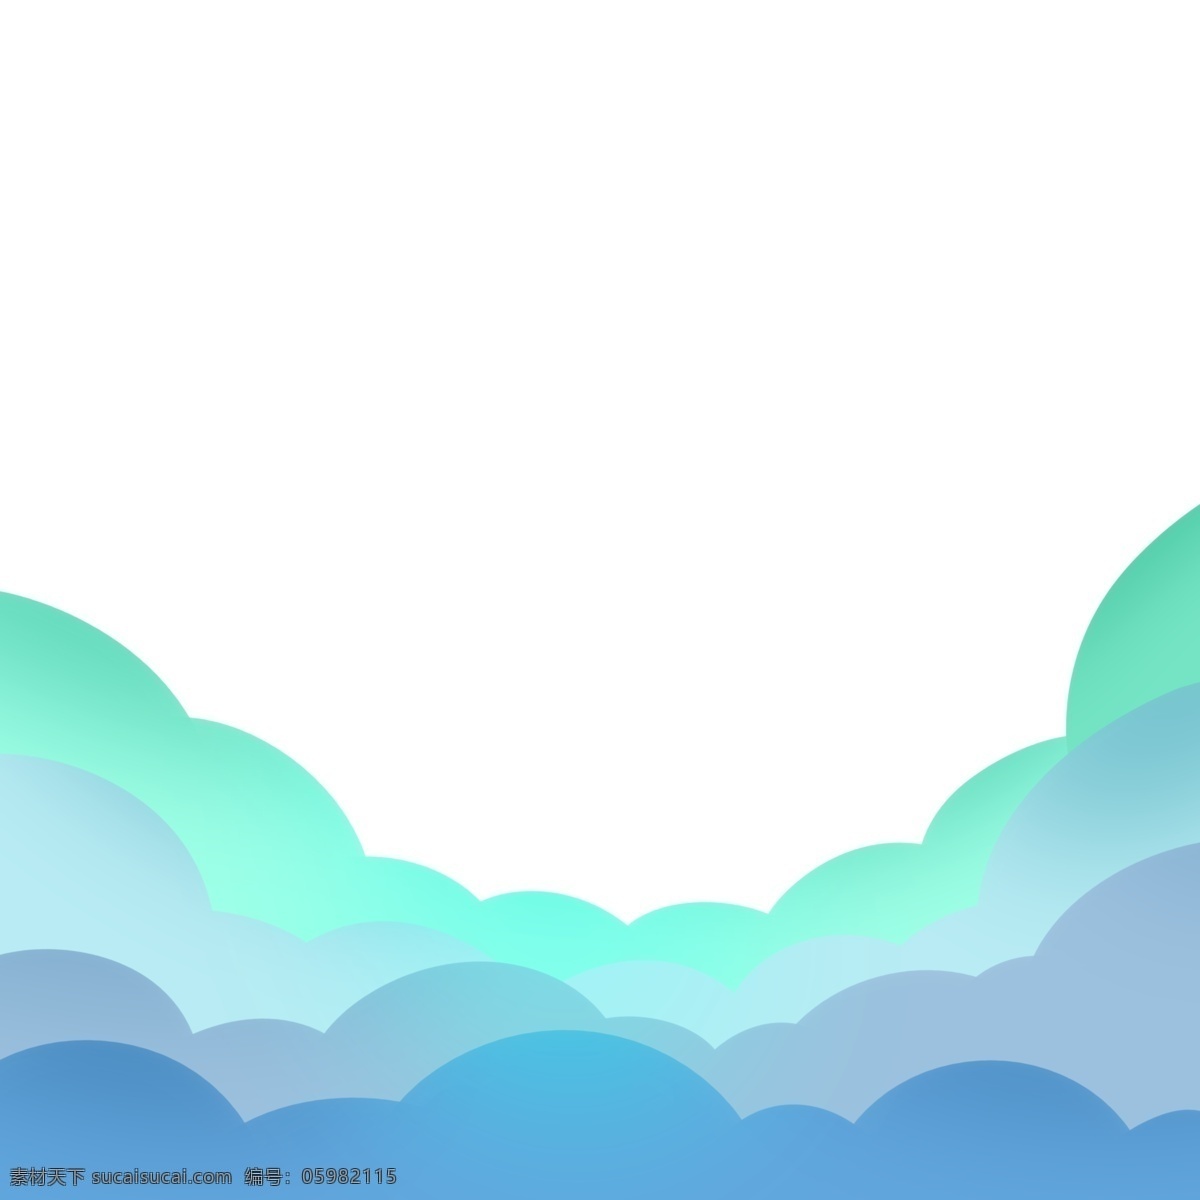 手绘 卡通 系列 云 天边 蓝色 云彩 天边的 蓝色云彩 装饰 贴画 白云朵朵 国传统 装饰画 美好 寓意 淡雅 点缀 颜色 朴素 蓬松